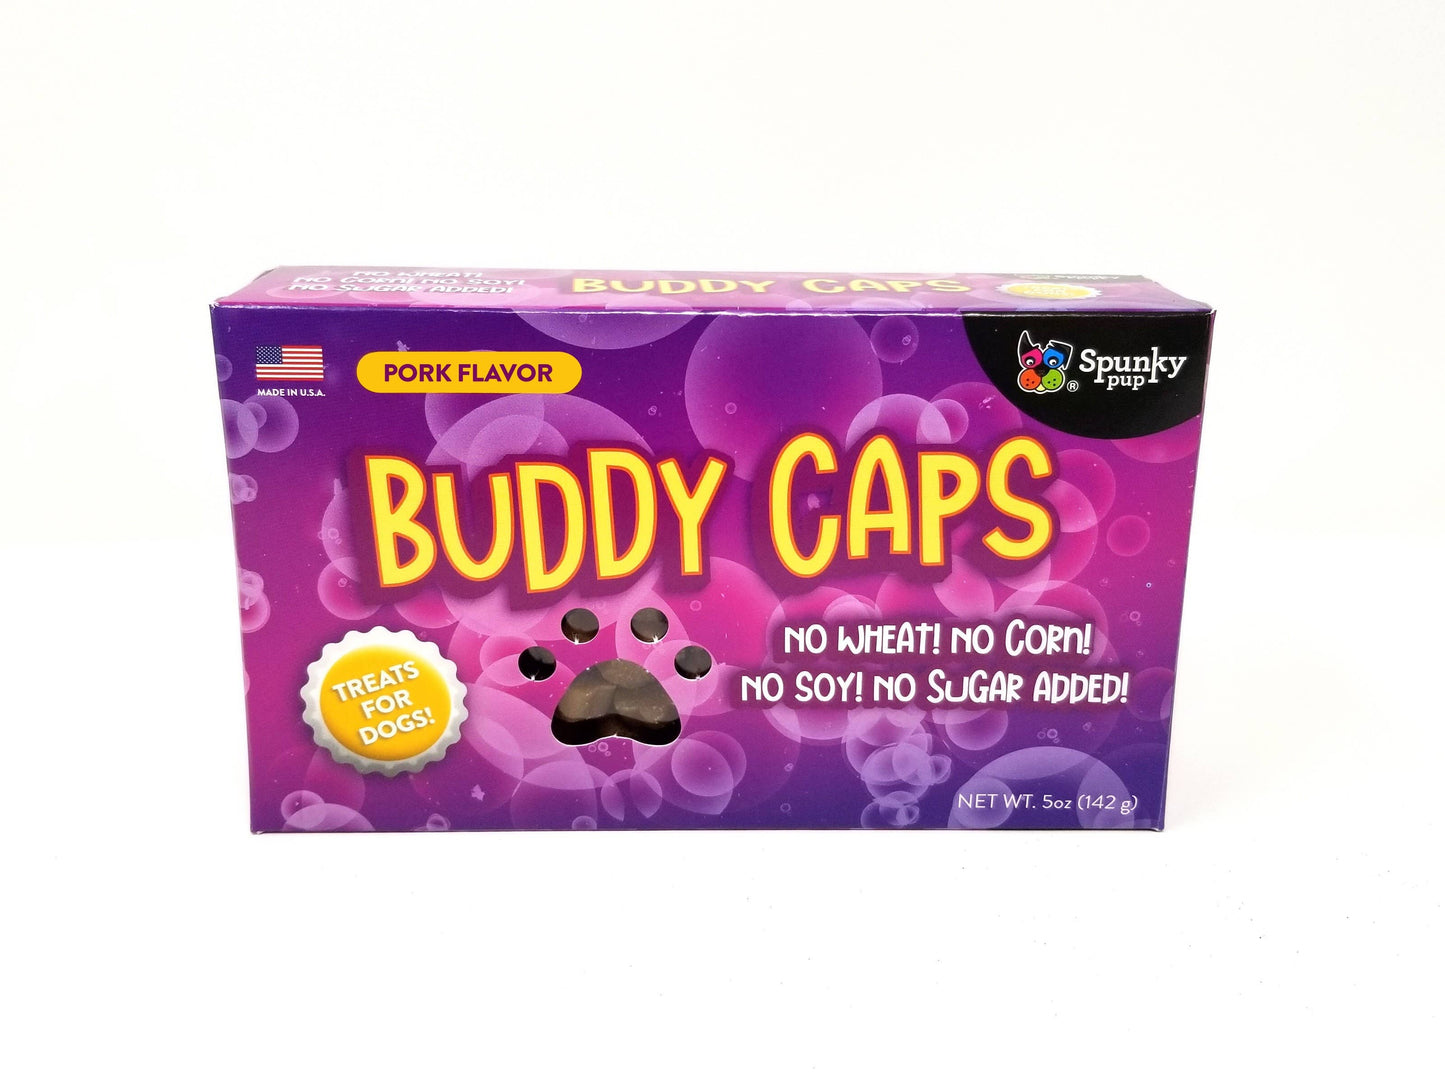 Buddy Caps Dog Treats